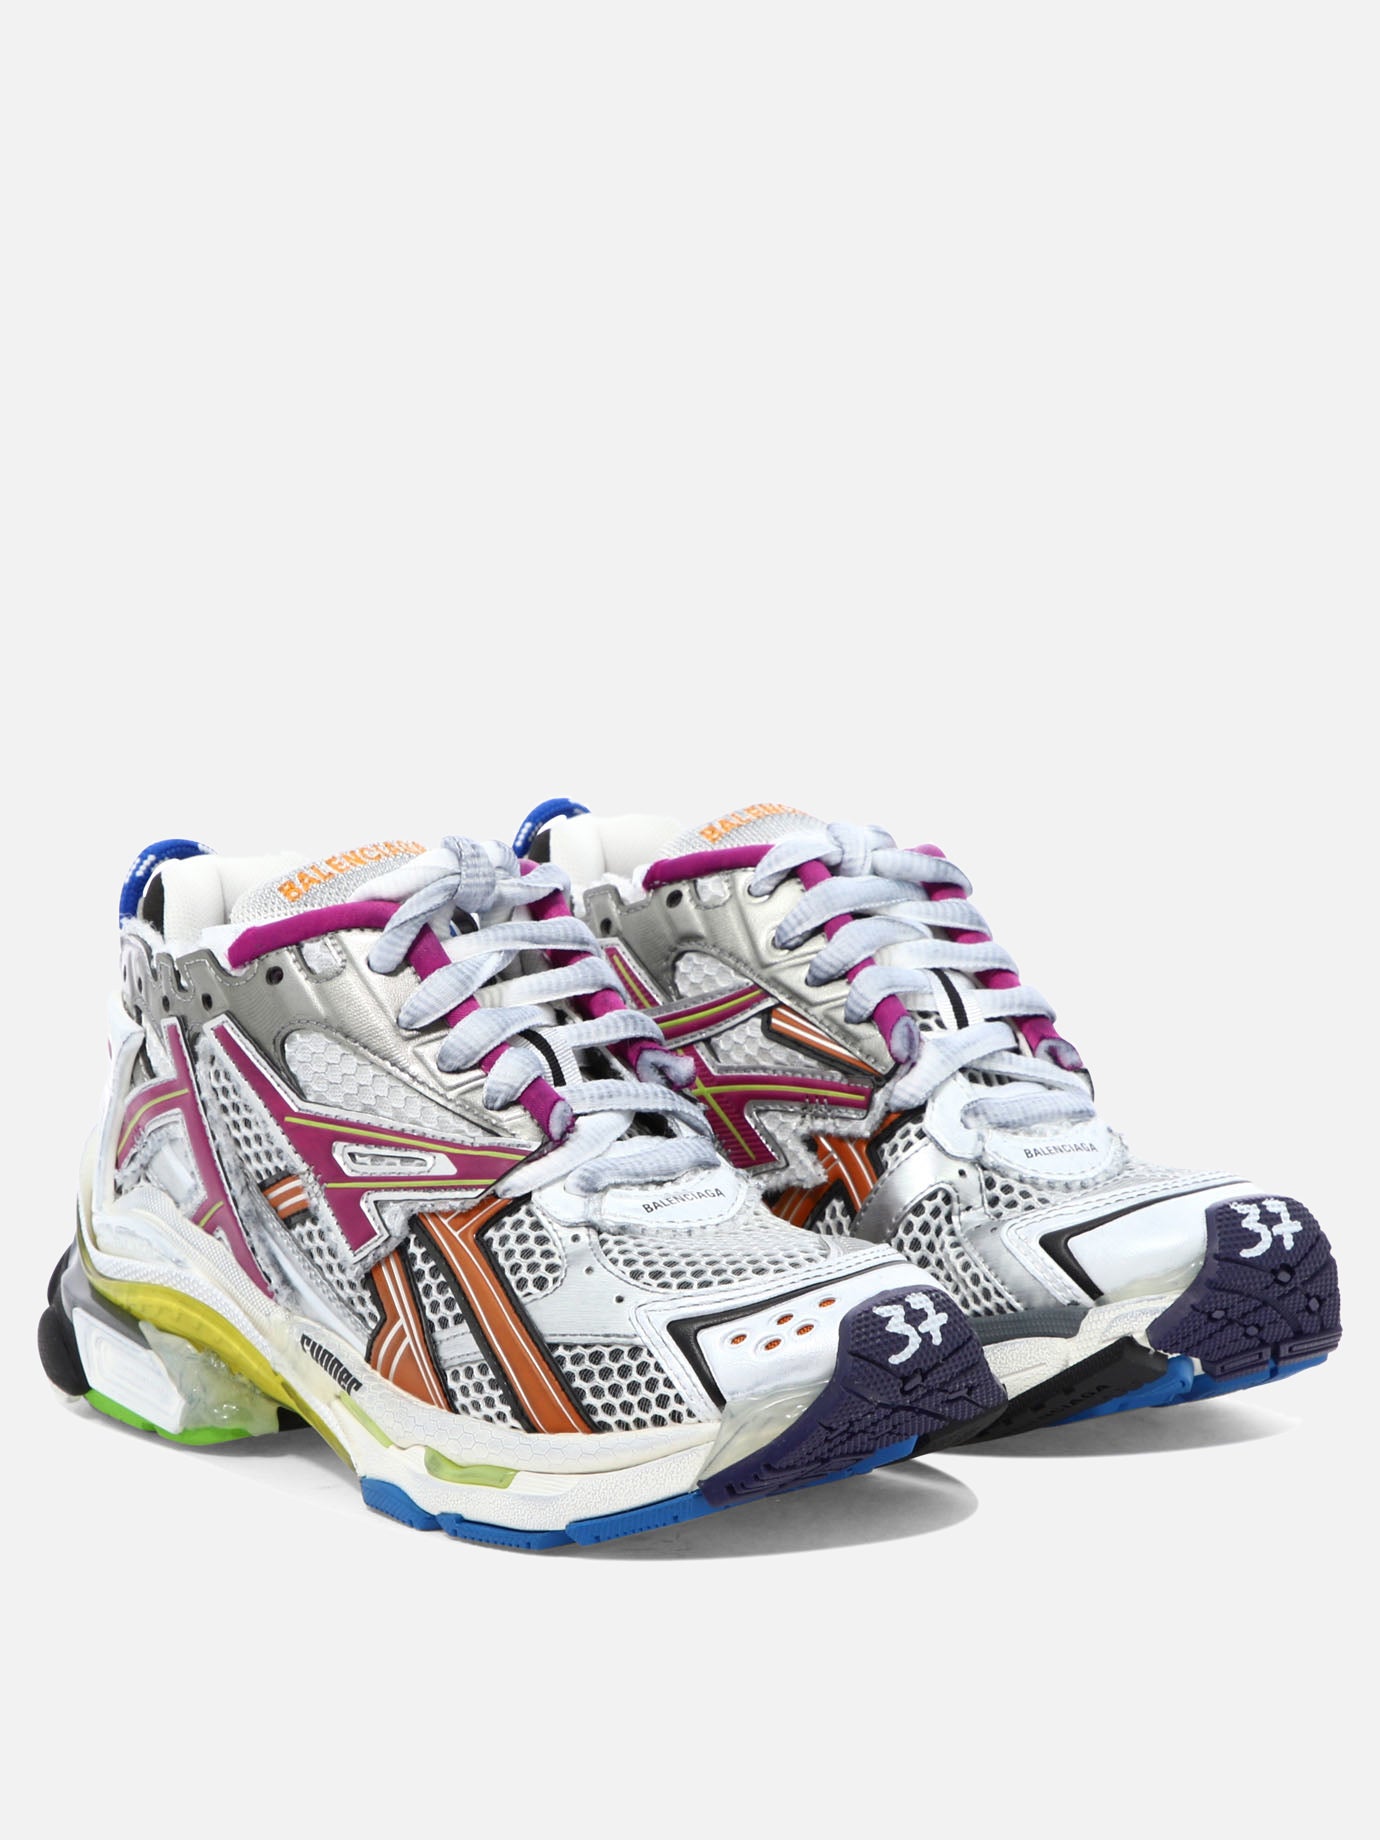 "Runner" sneakers